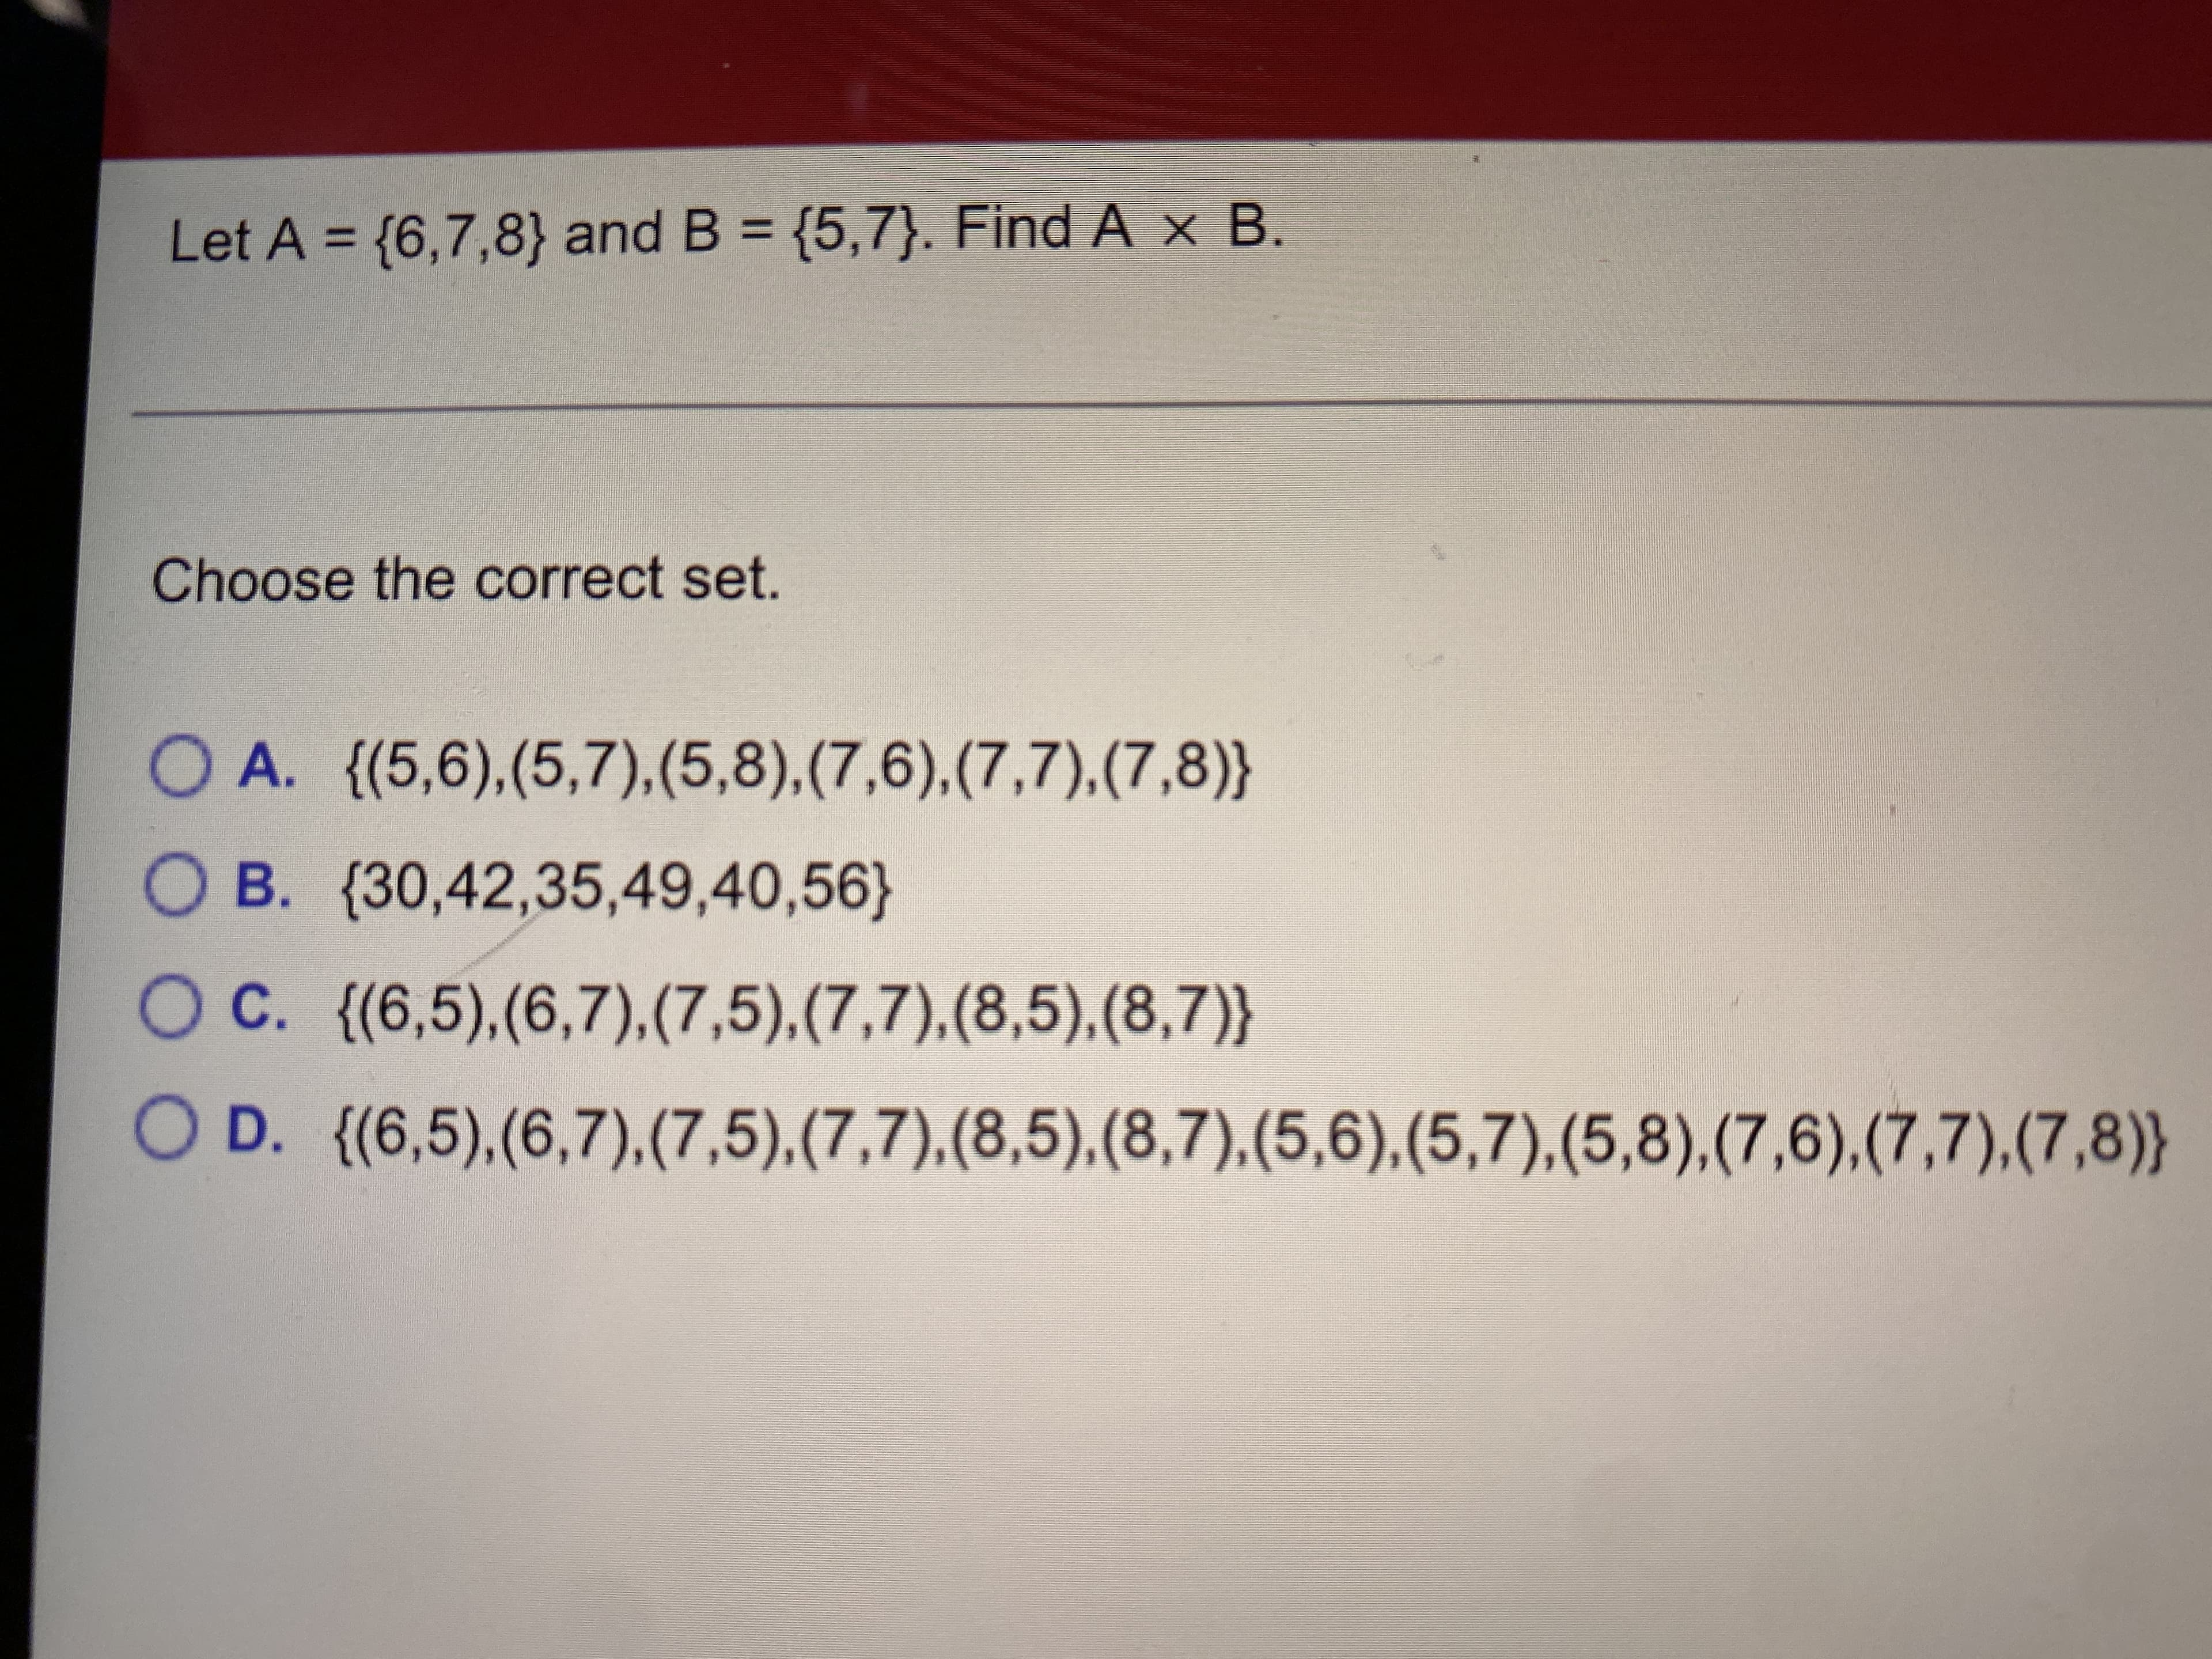 Let A = {6,7,8} and B = {5,7}. Find A x B.
%3D
Choose th correct set.
O A. {(5,6),(5,7),(5,8),(7,6),(7,7),(7,8)}
O B. (30,42,35,49,40,56}
OC. {(6,5),(6,7),(7,5),(7,7).(8,5),(8,7)}
O D. {(6,5),(6,7).(7,5),(7,7),(8,5),(8,7),(5,6),(5,7),(5,8),(7,6),(7,7).(7,8)}
